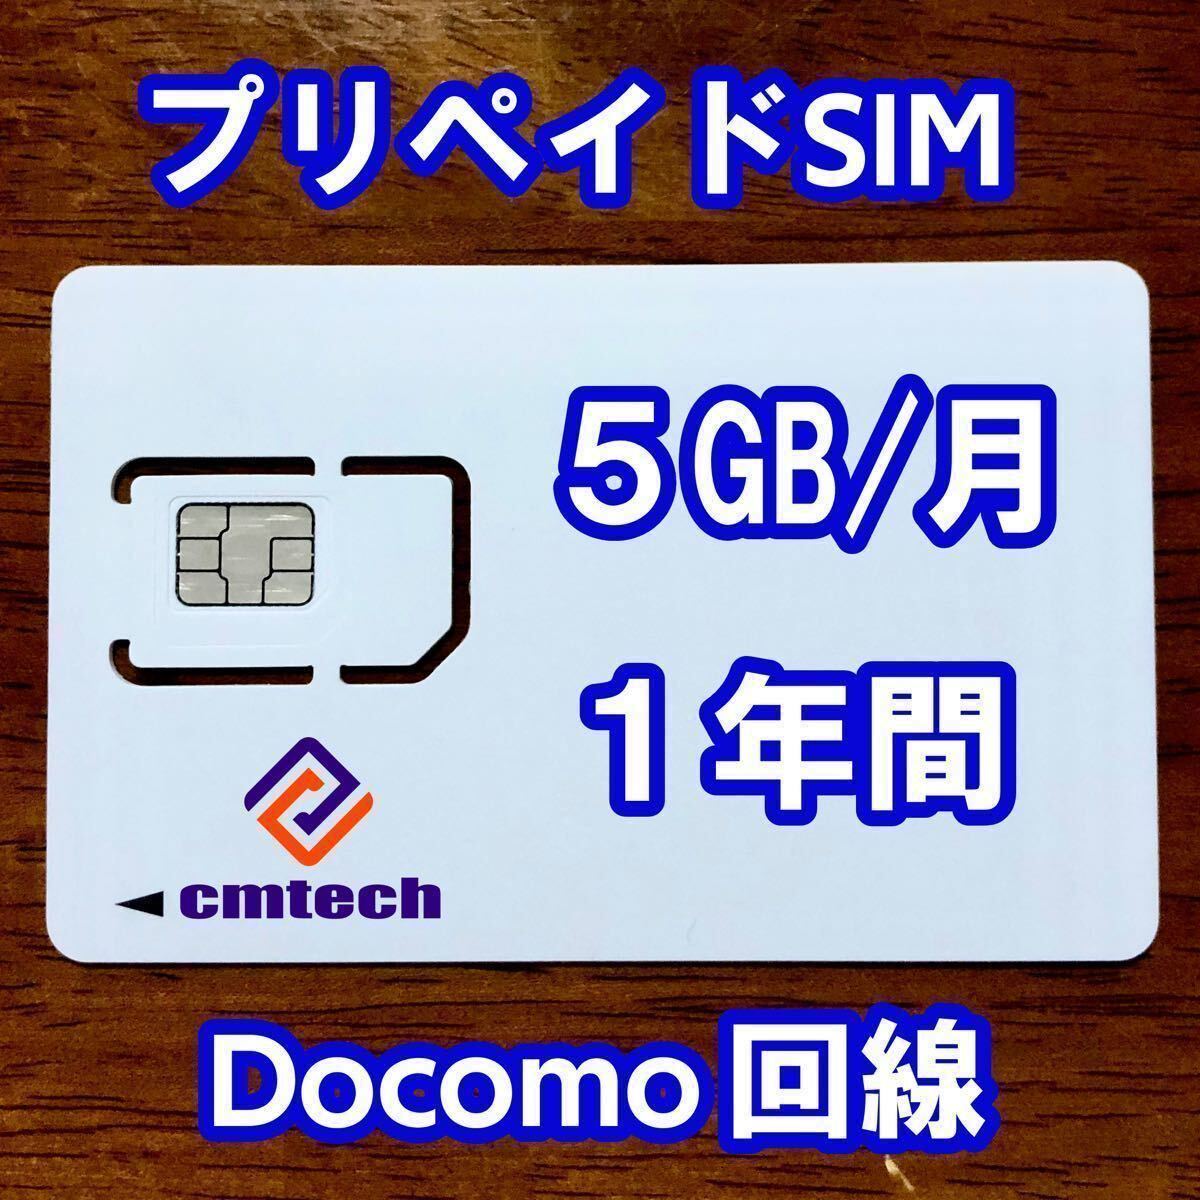 Docomo схема plipeidosim 5GB/ месяц 1 лет действительный данные сообщение sim карта 646